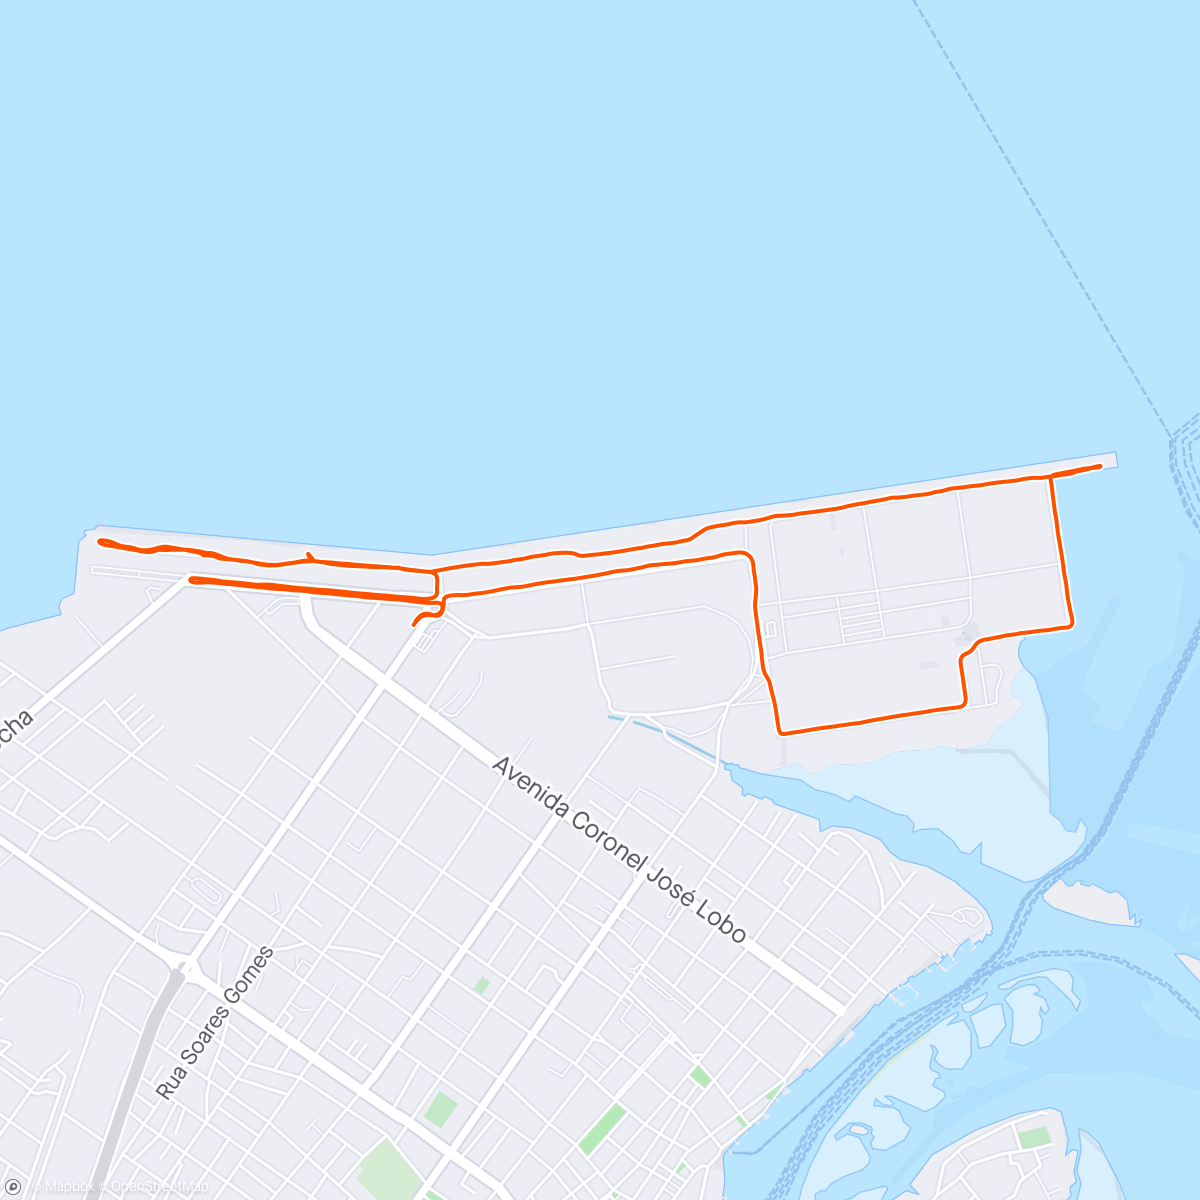 「10k Porto Paranaguá」活動的地圖